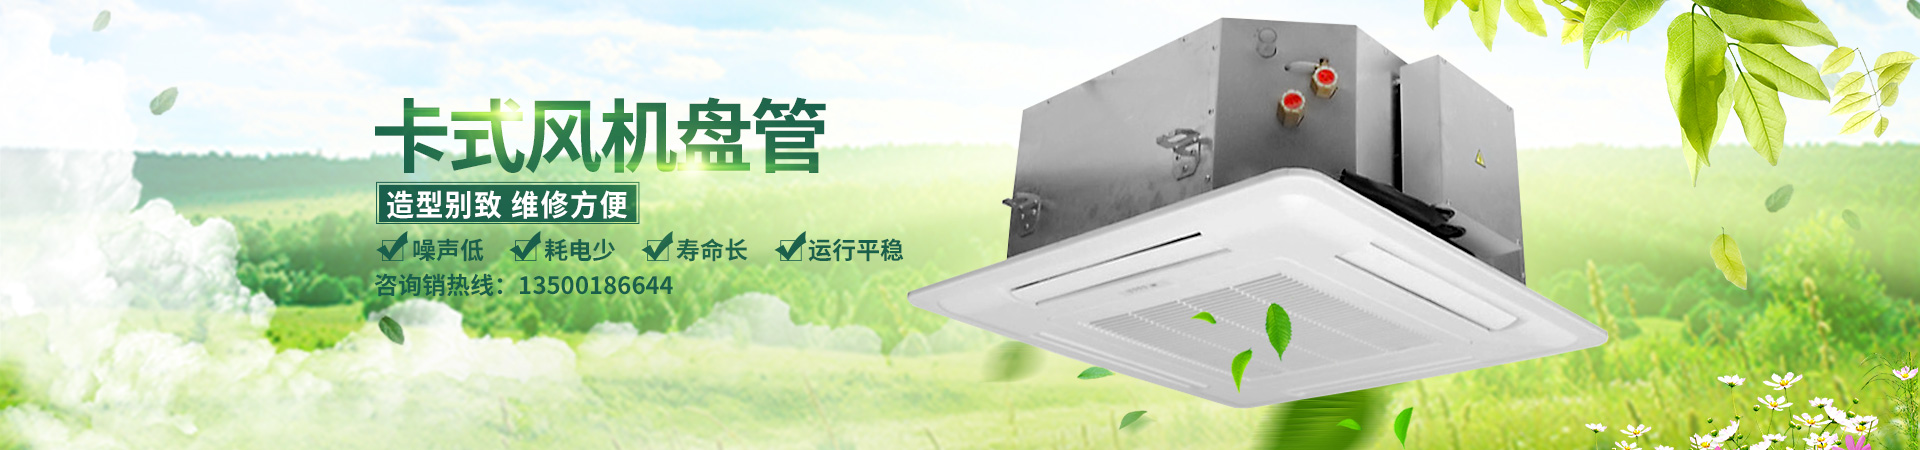 惠州吸顶天井机FP-204K 四面出风空调 4P明装天井机 冷暖两用天花机图片